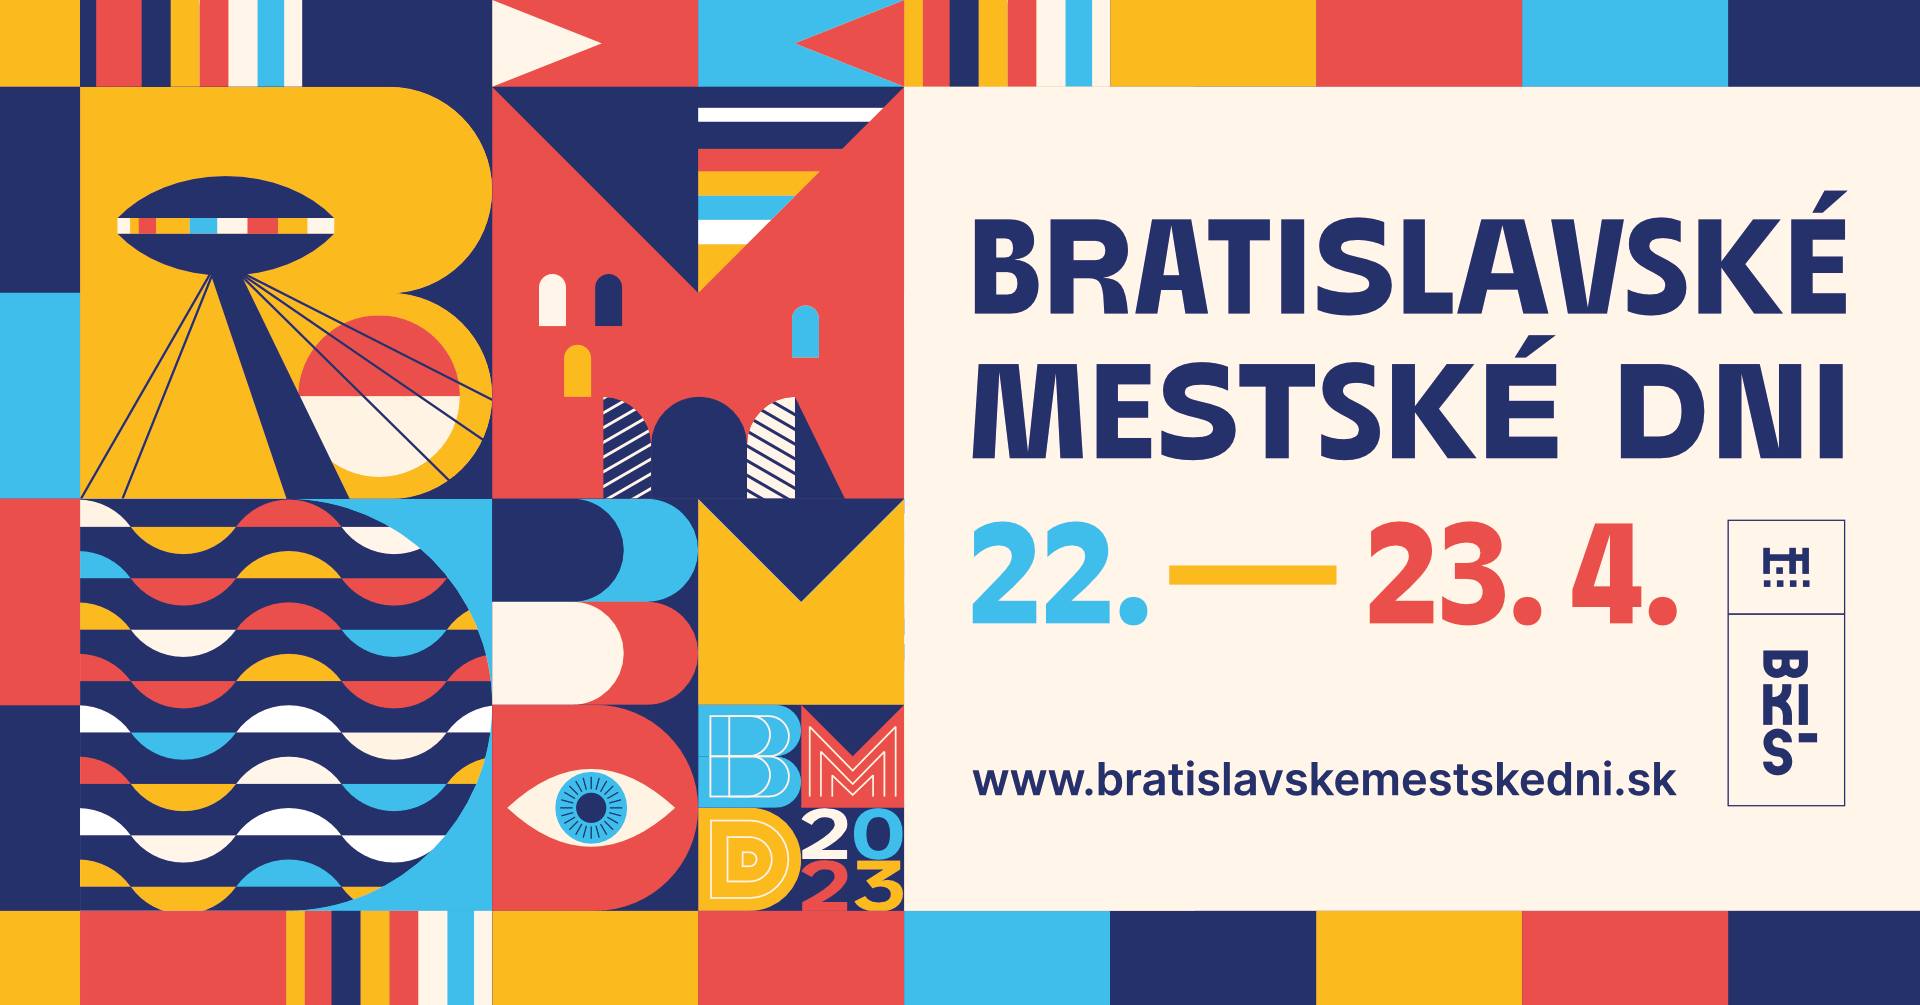 Bratislavsk mestsk dni 2023